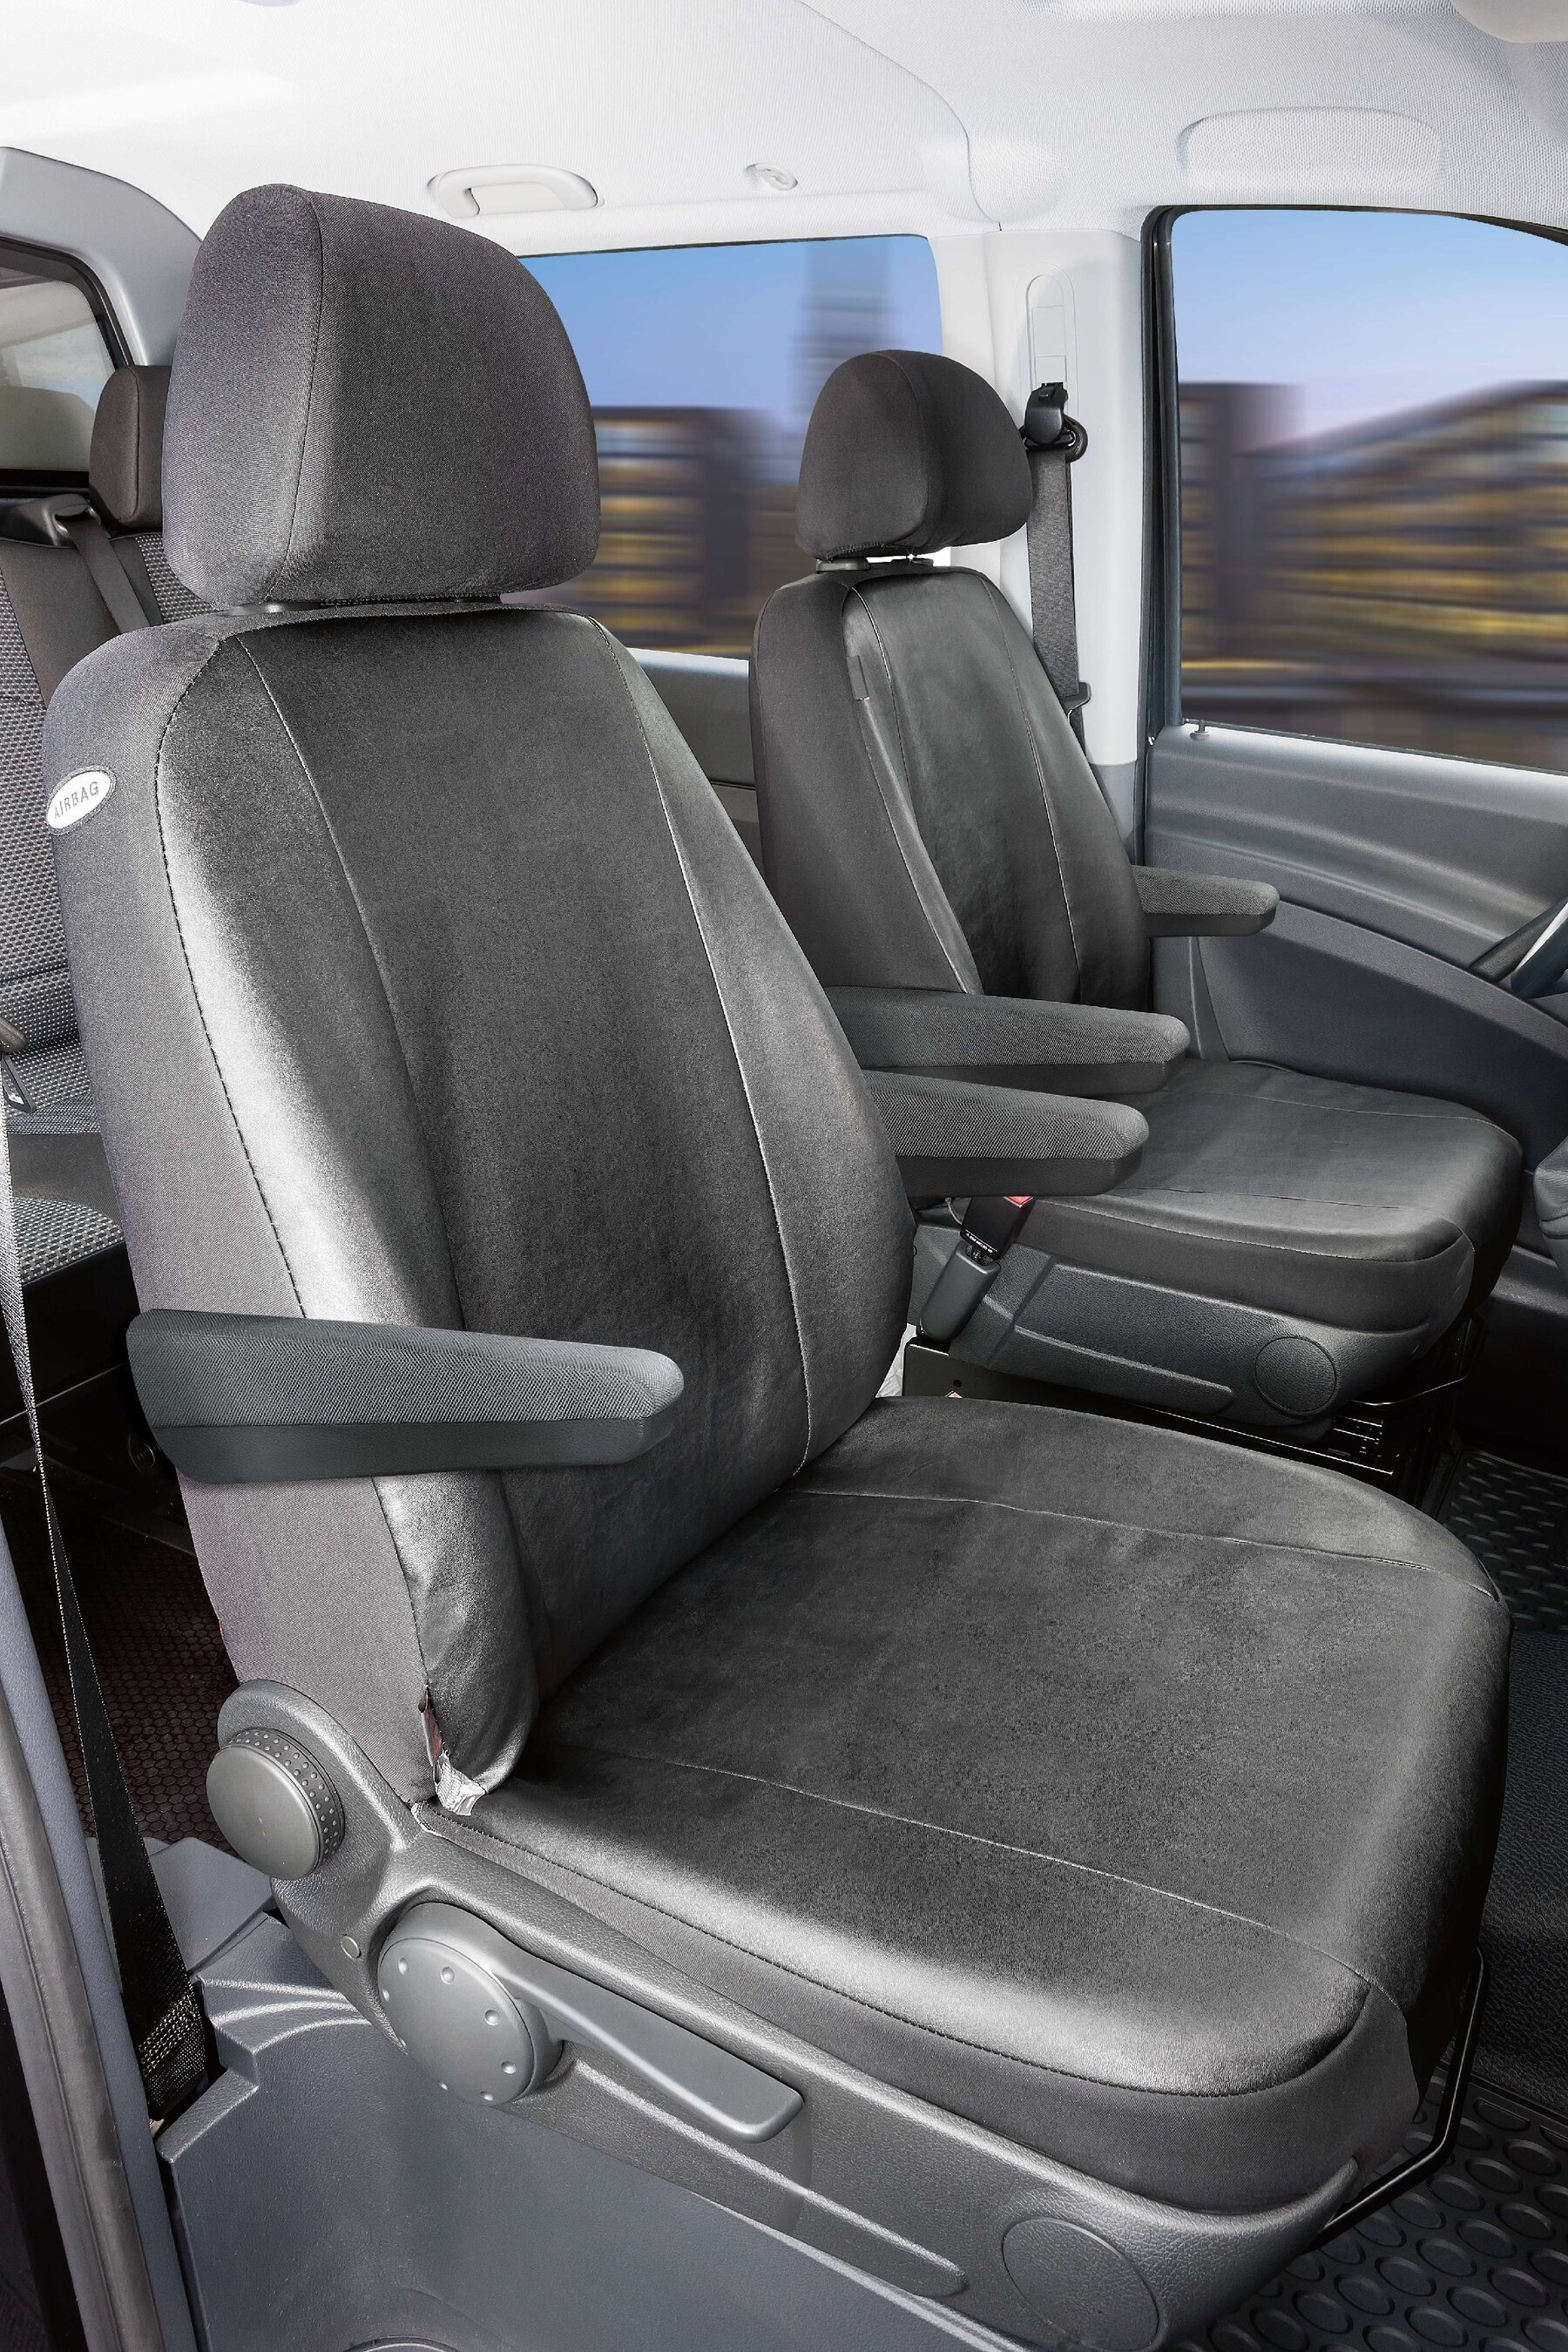 Autoschonbezug Transporter aus Kunstleder für Mercedes-Benz Viano/Vito, 2 Einzelsitze mit Armlehne innen & außen